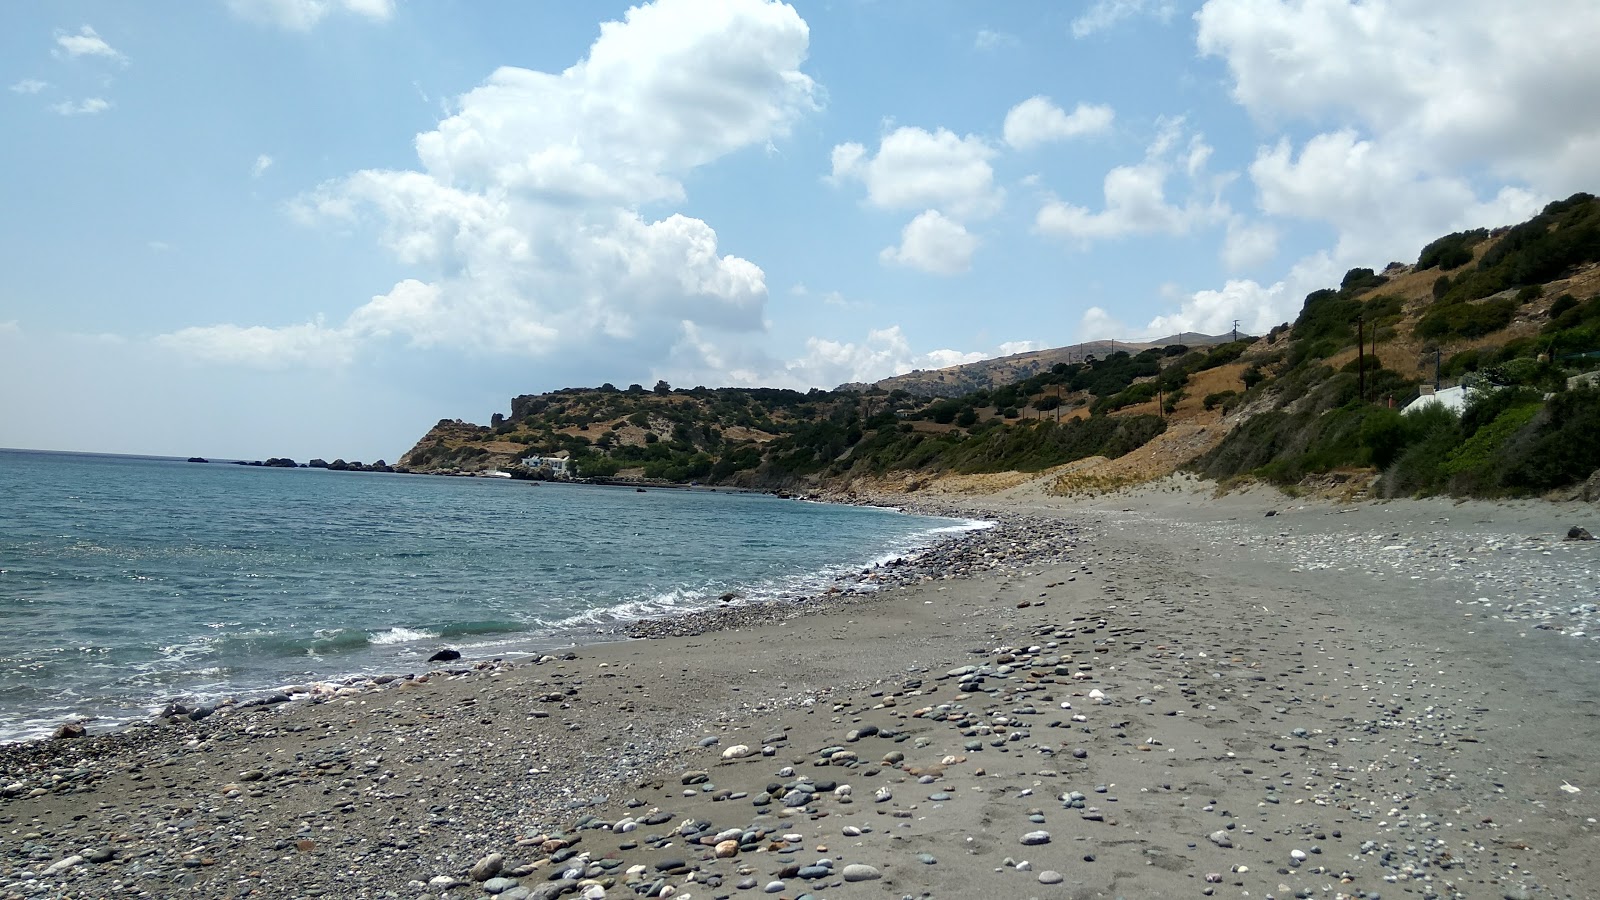 Photo of Podare beach with spacious shore